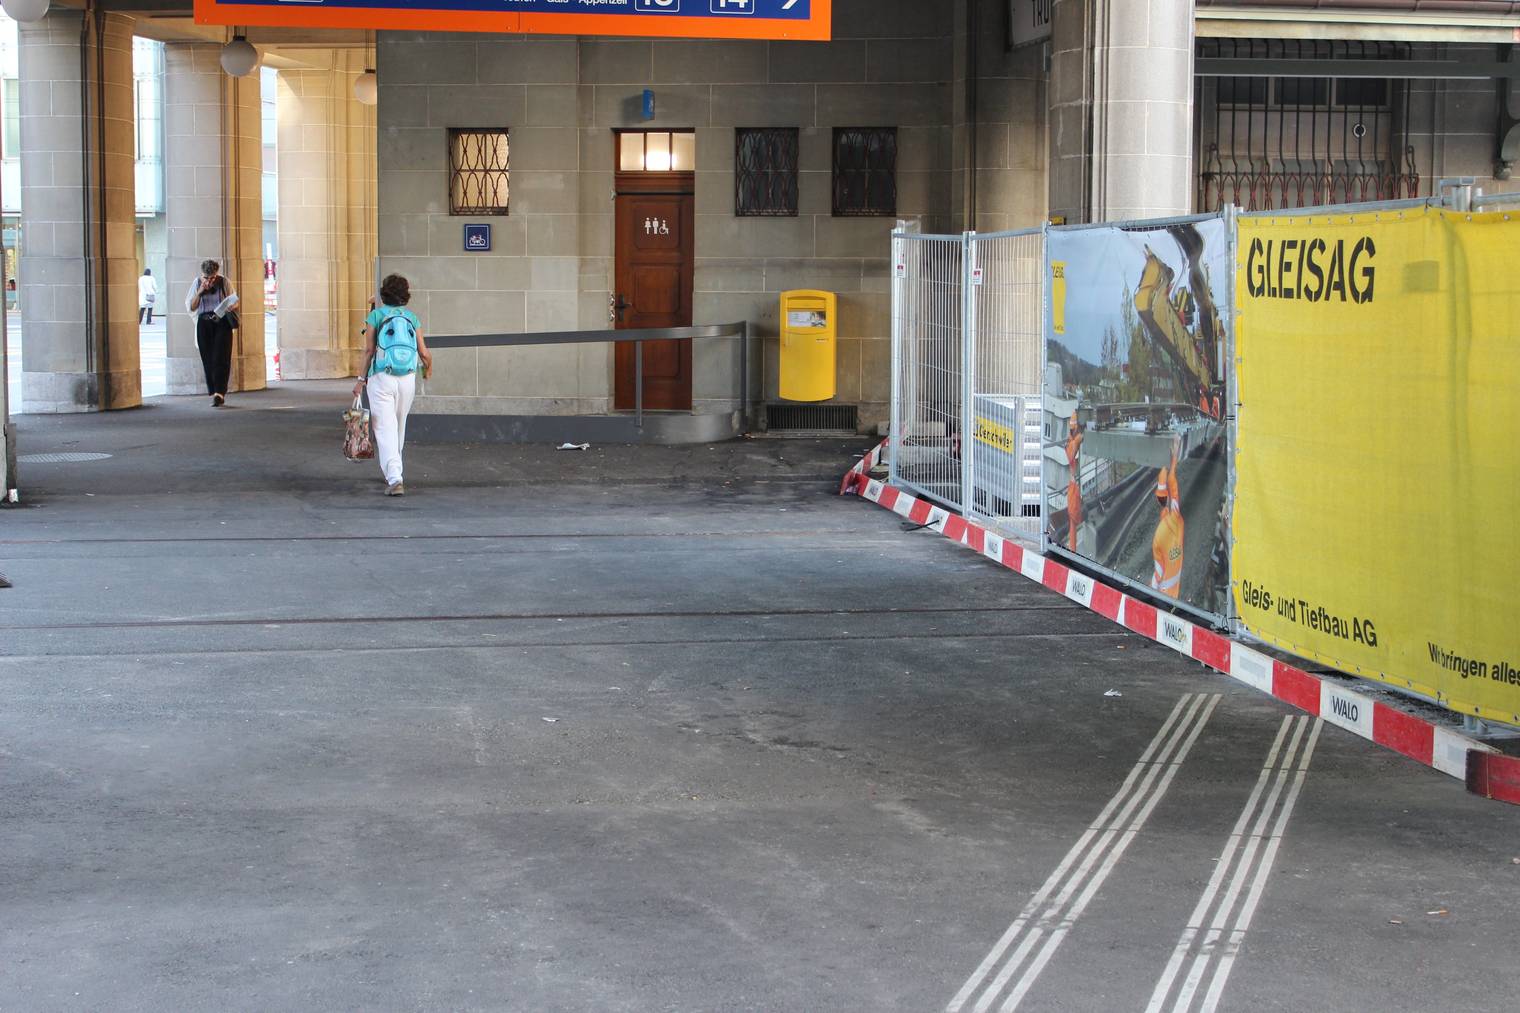 Die Baulatten am Boden lassen diesen Blindenweg im Westbahnhof nicht zur Sackgasse werden. ©FM1Today